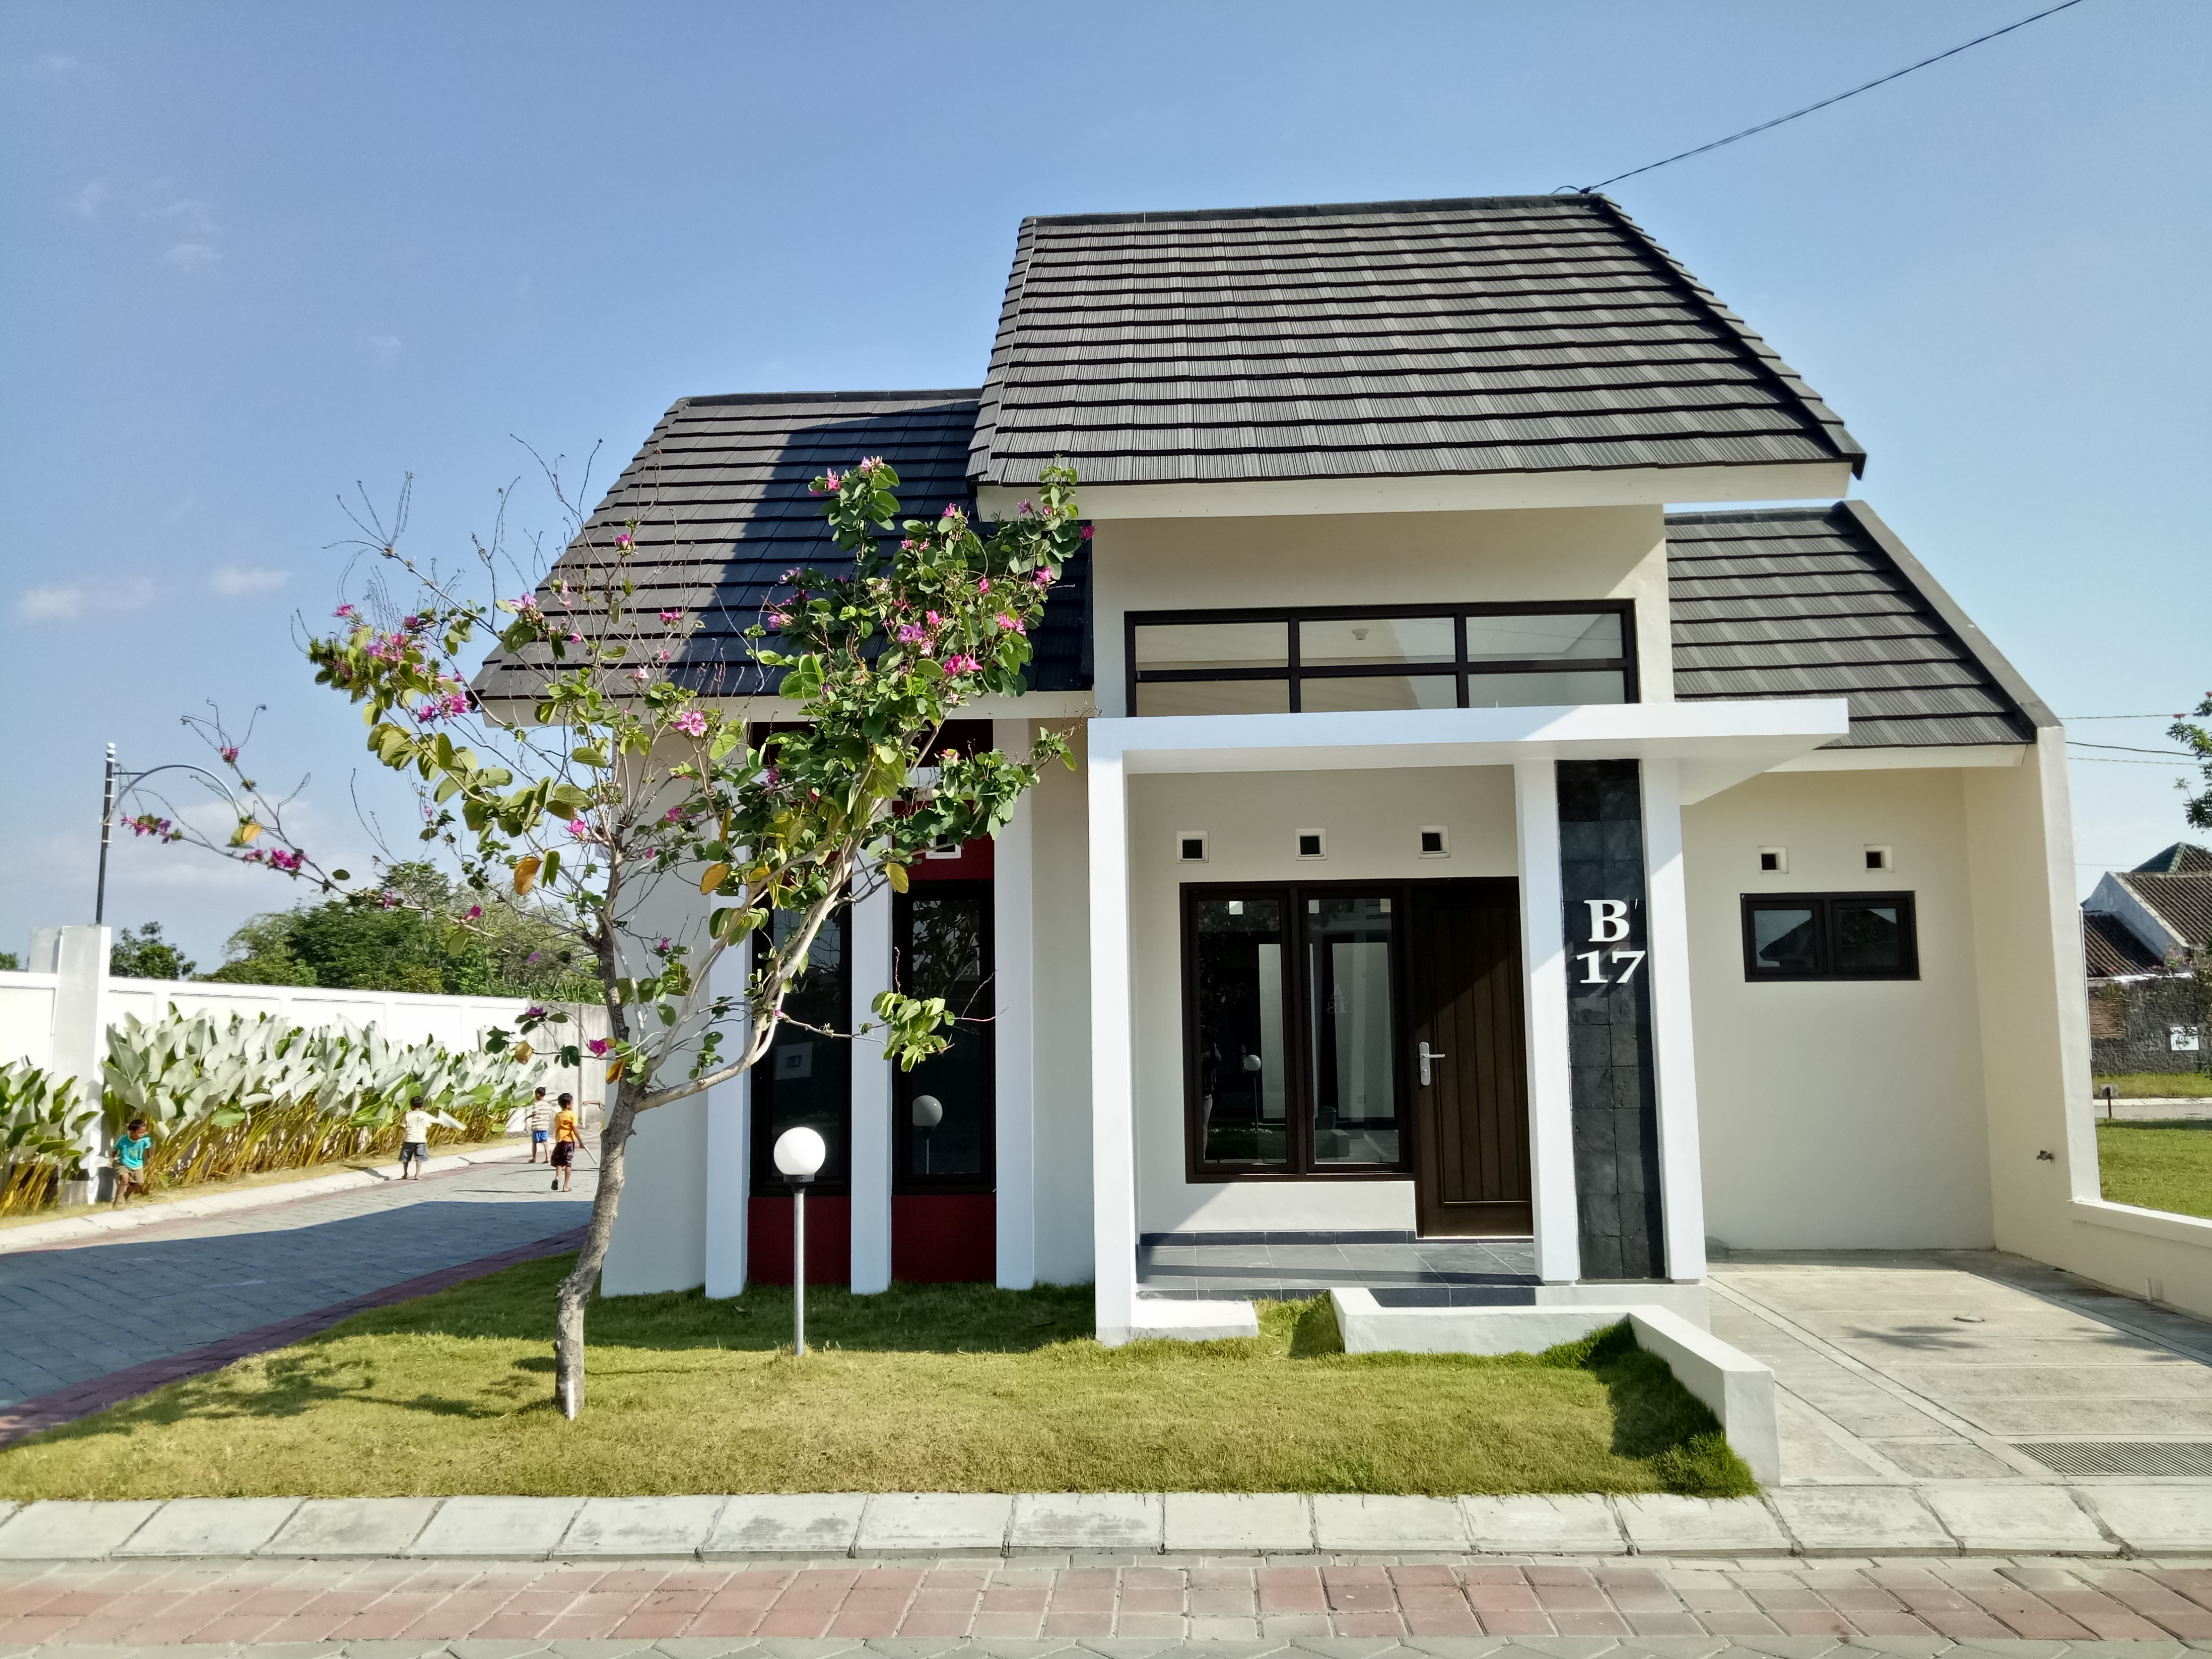 Perumahan Solo  Dekat Kampus UMS Rumah  dijual  2019 rumah  